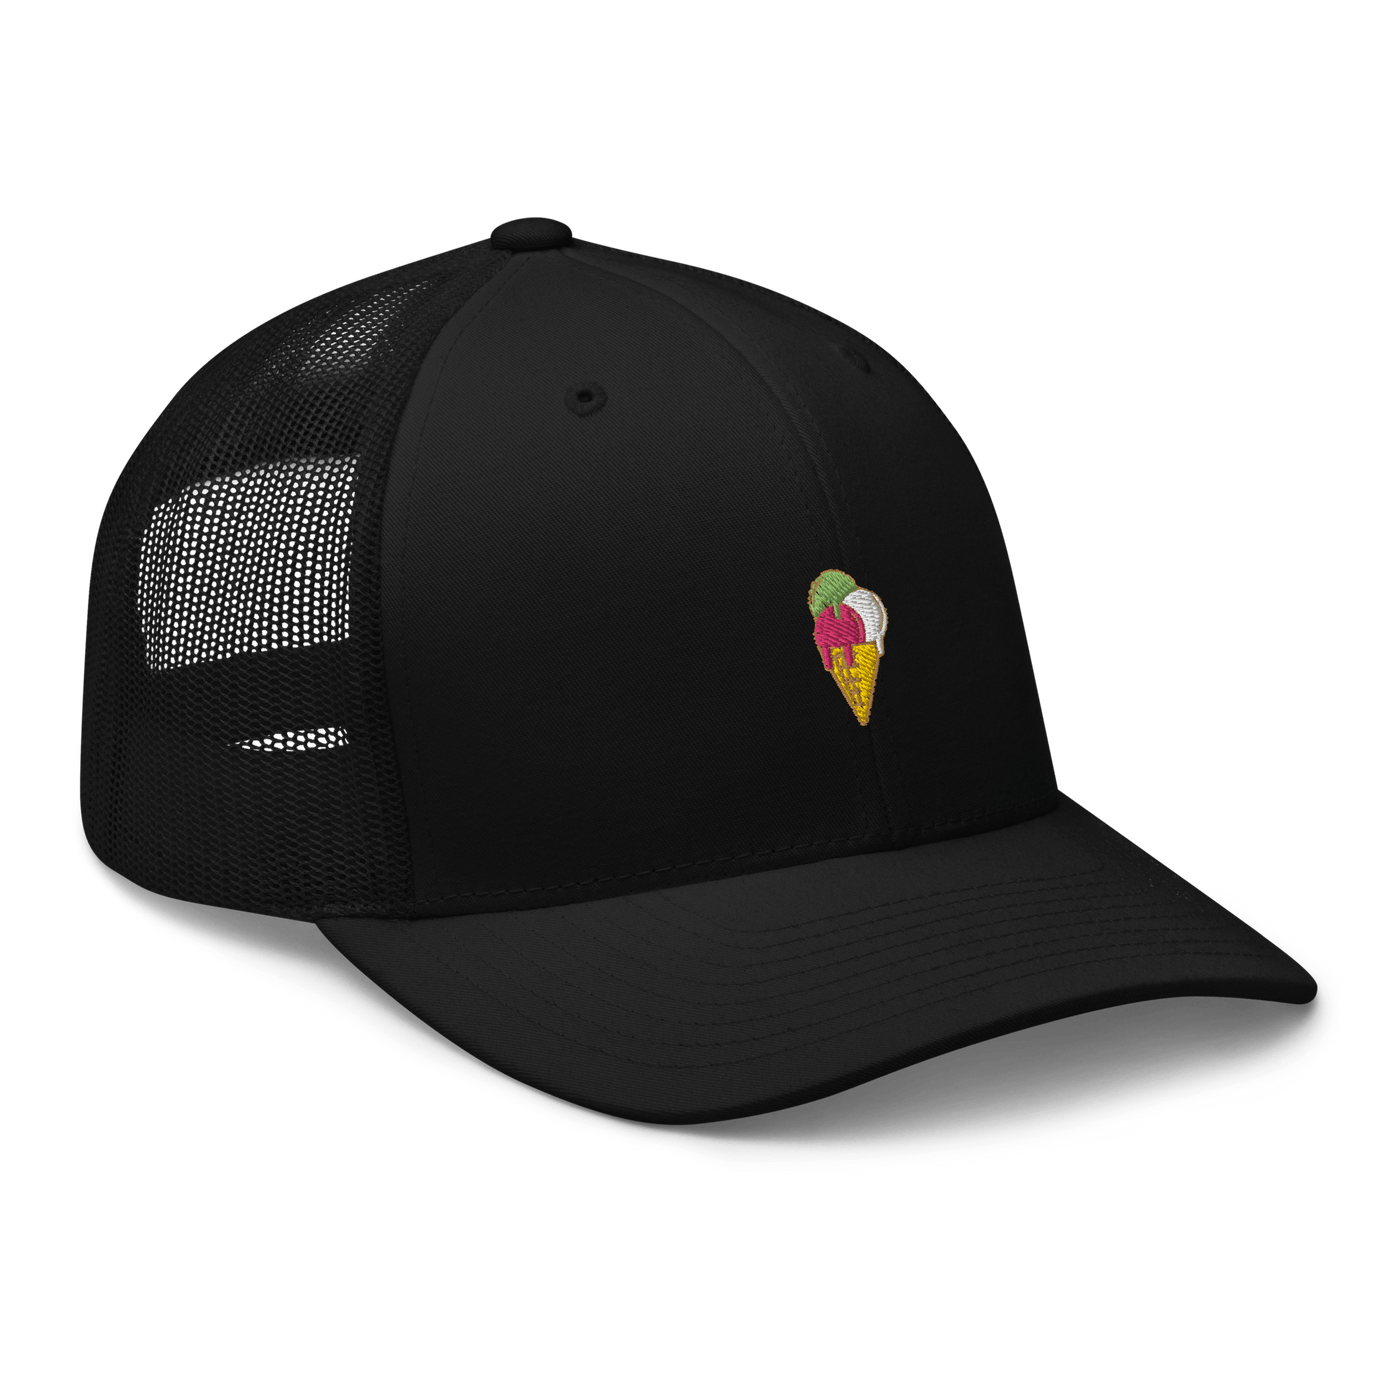 Ice Cream Cone Trucker Cap - Black - - Just Another Cap Store